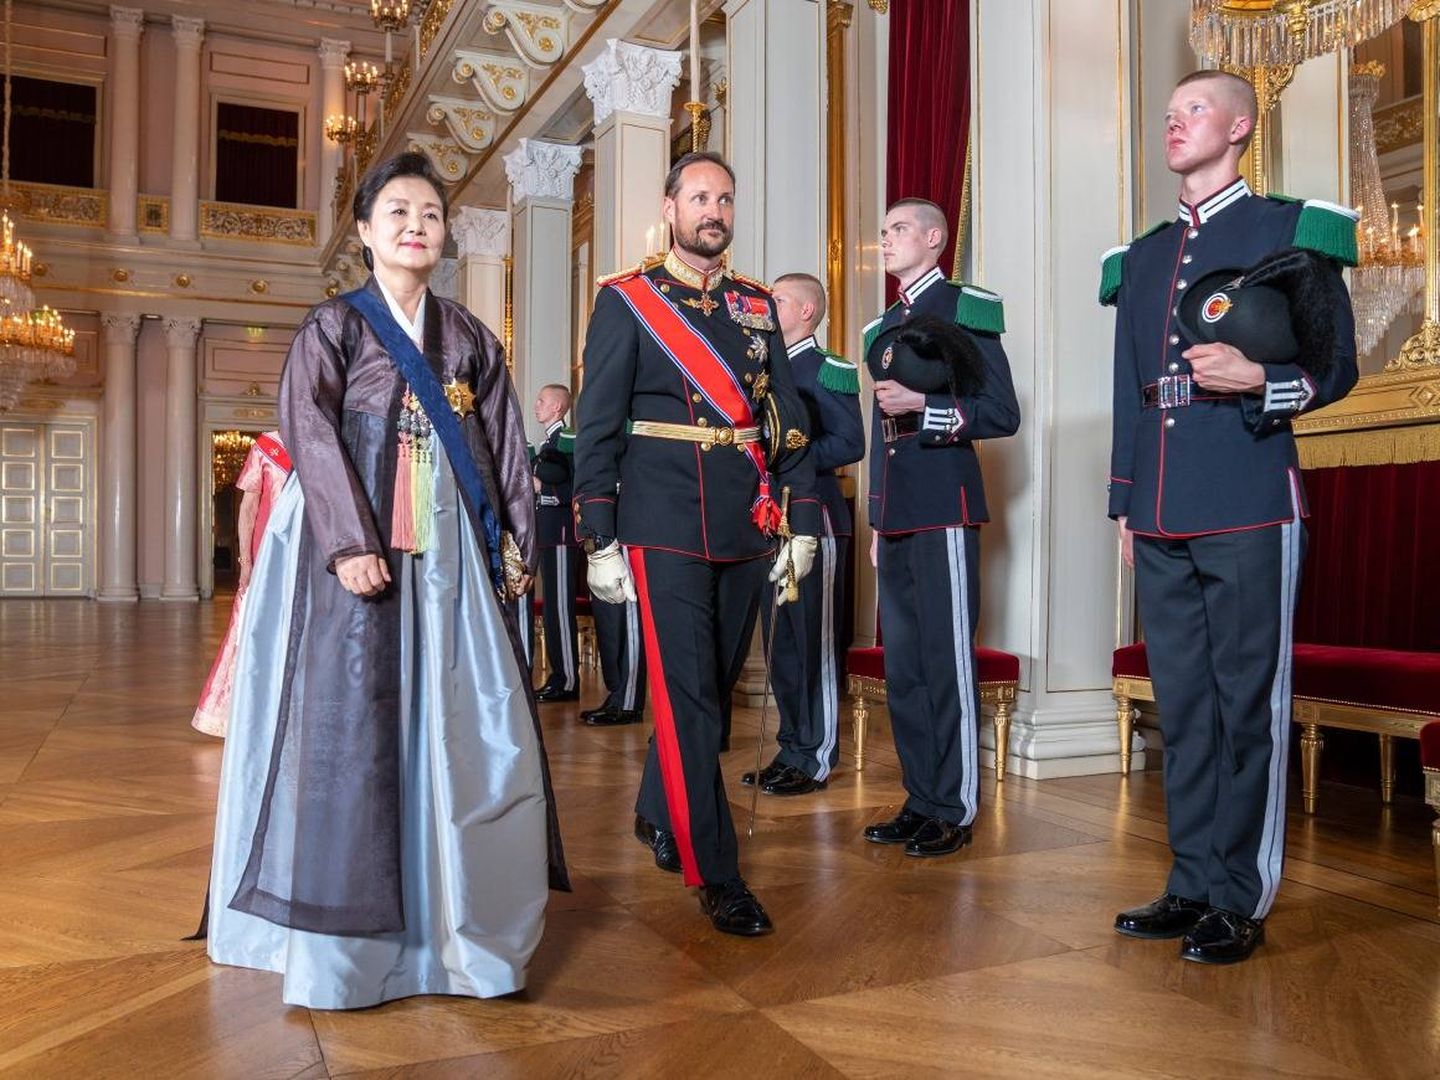 Cena de gala en el Palacio de Oslo. (Kongehuset)